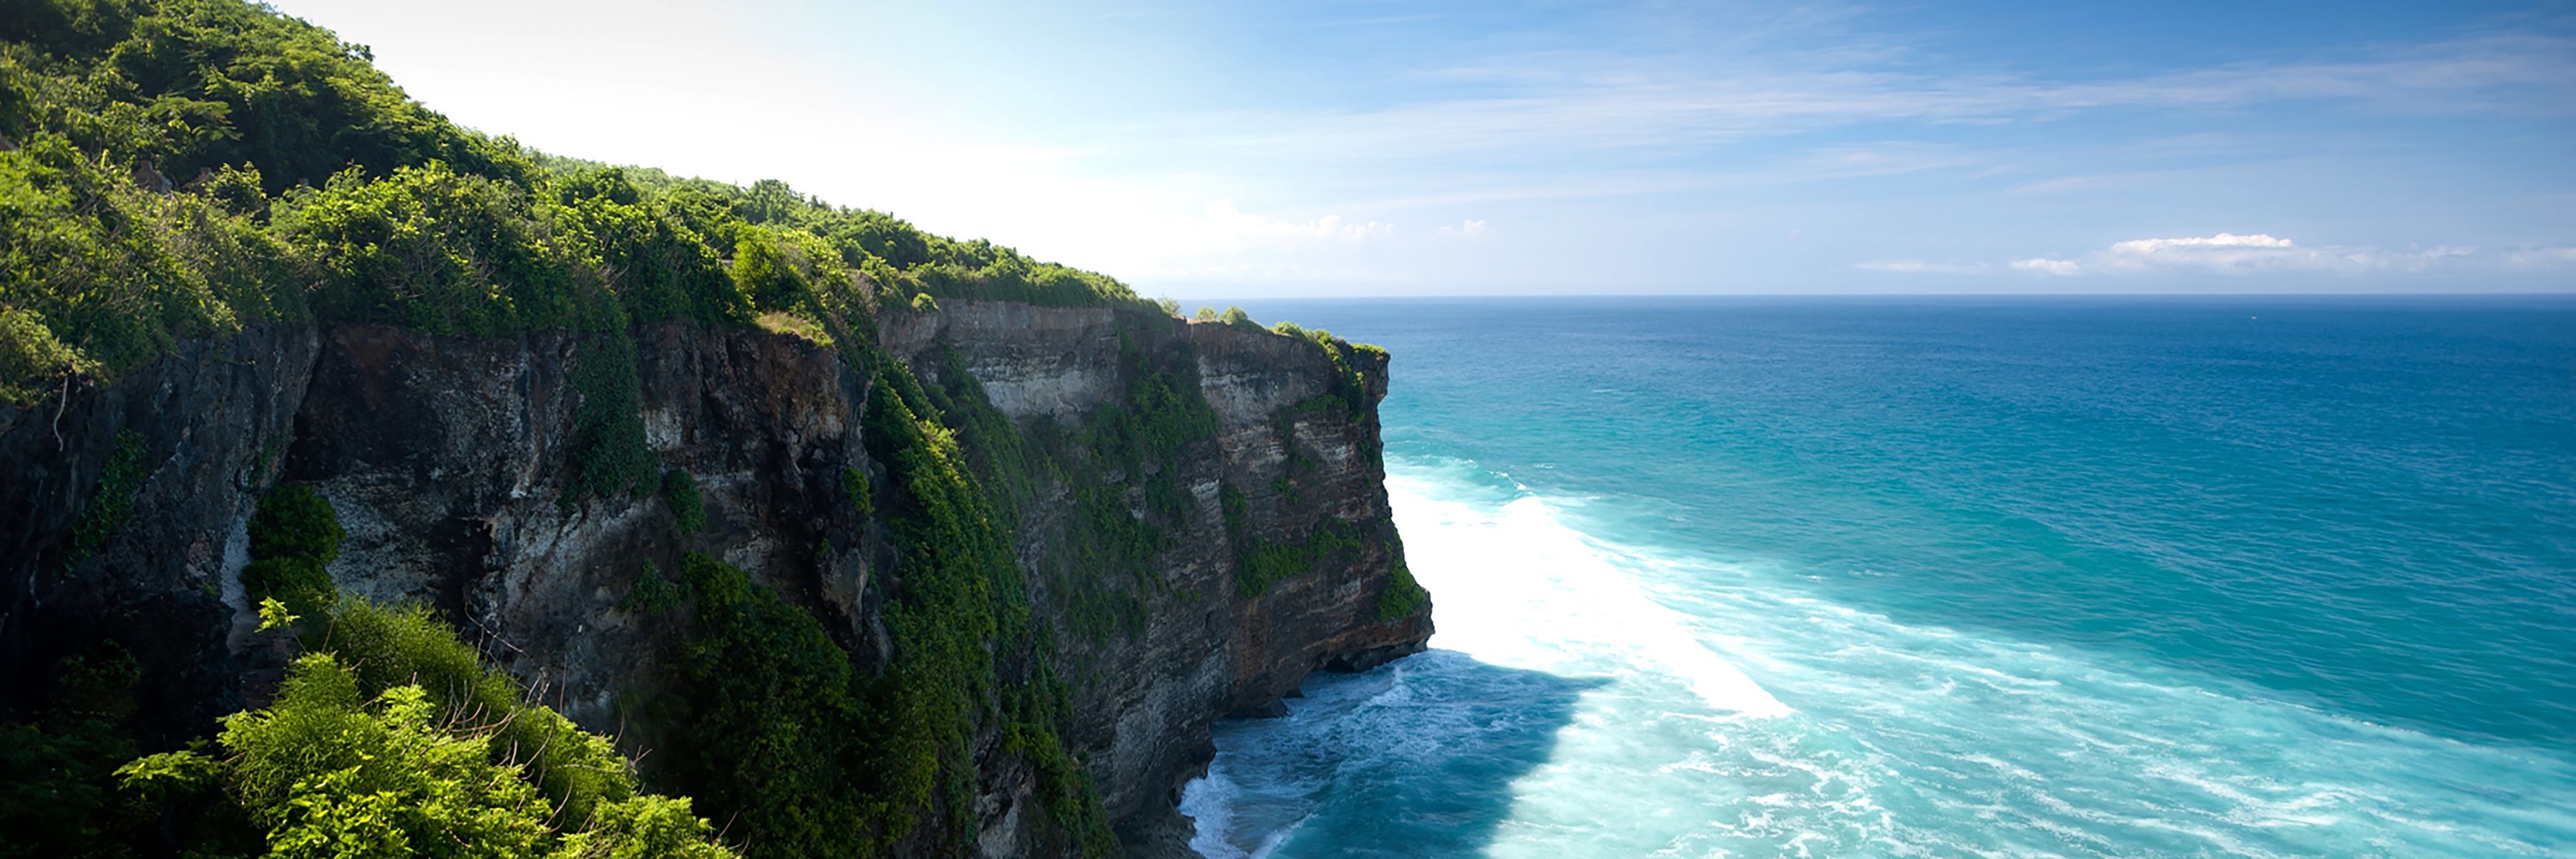 Balis Pulsschlag und Gili Meno - Oase der Ruhe